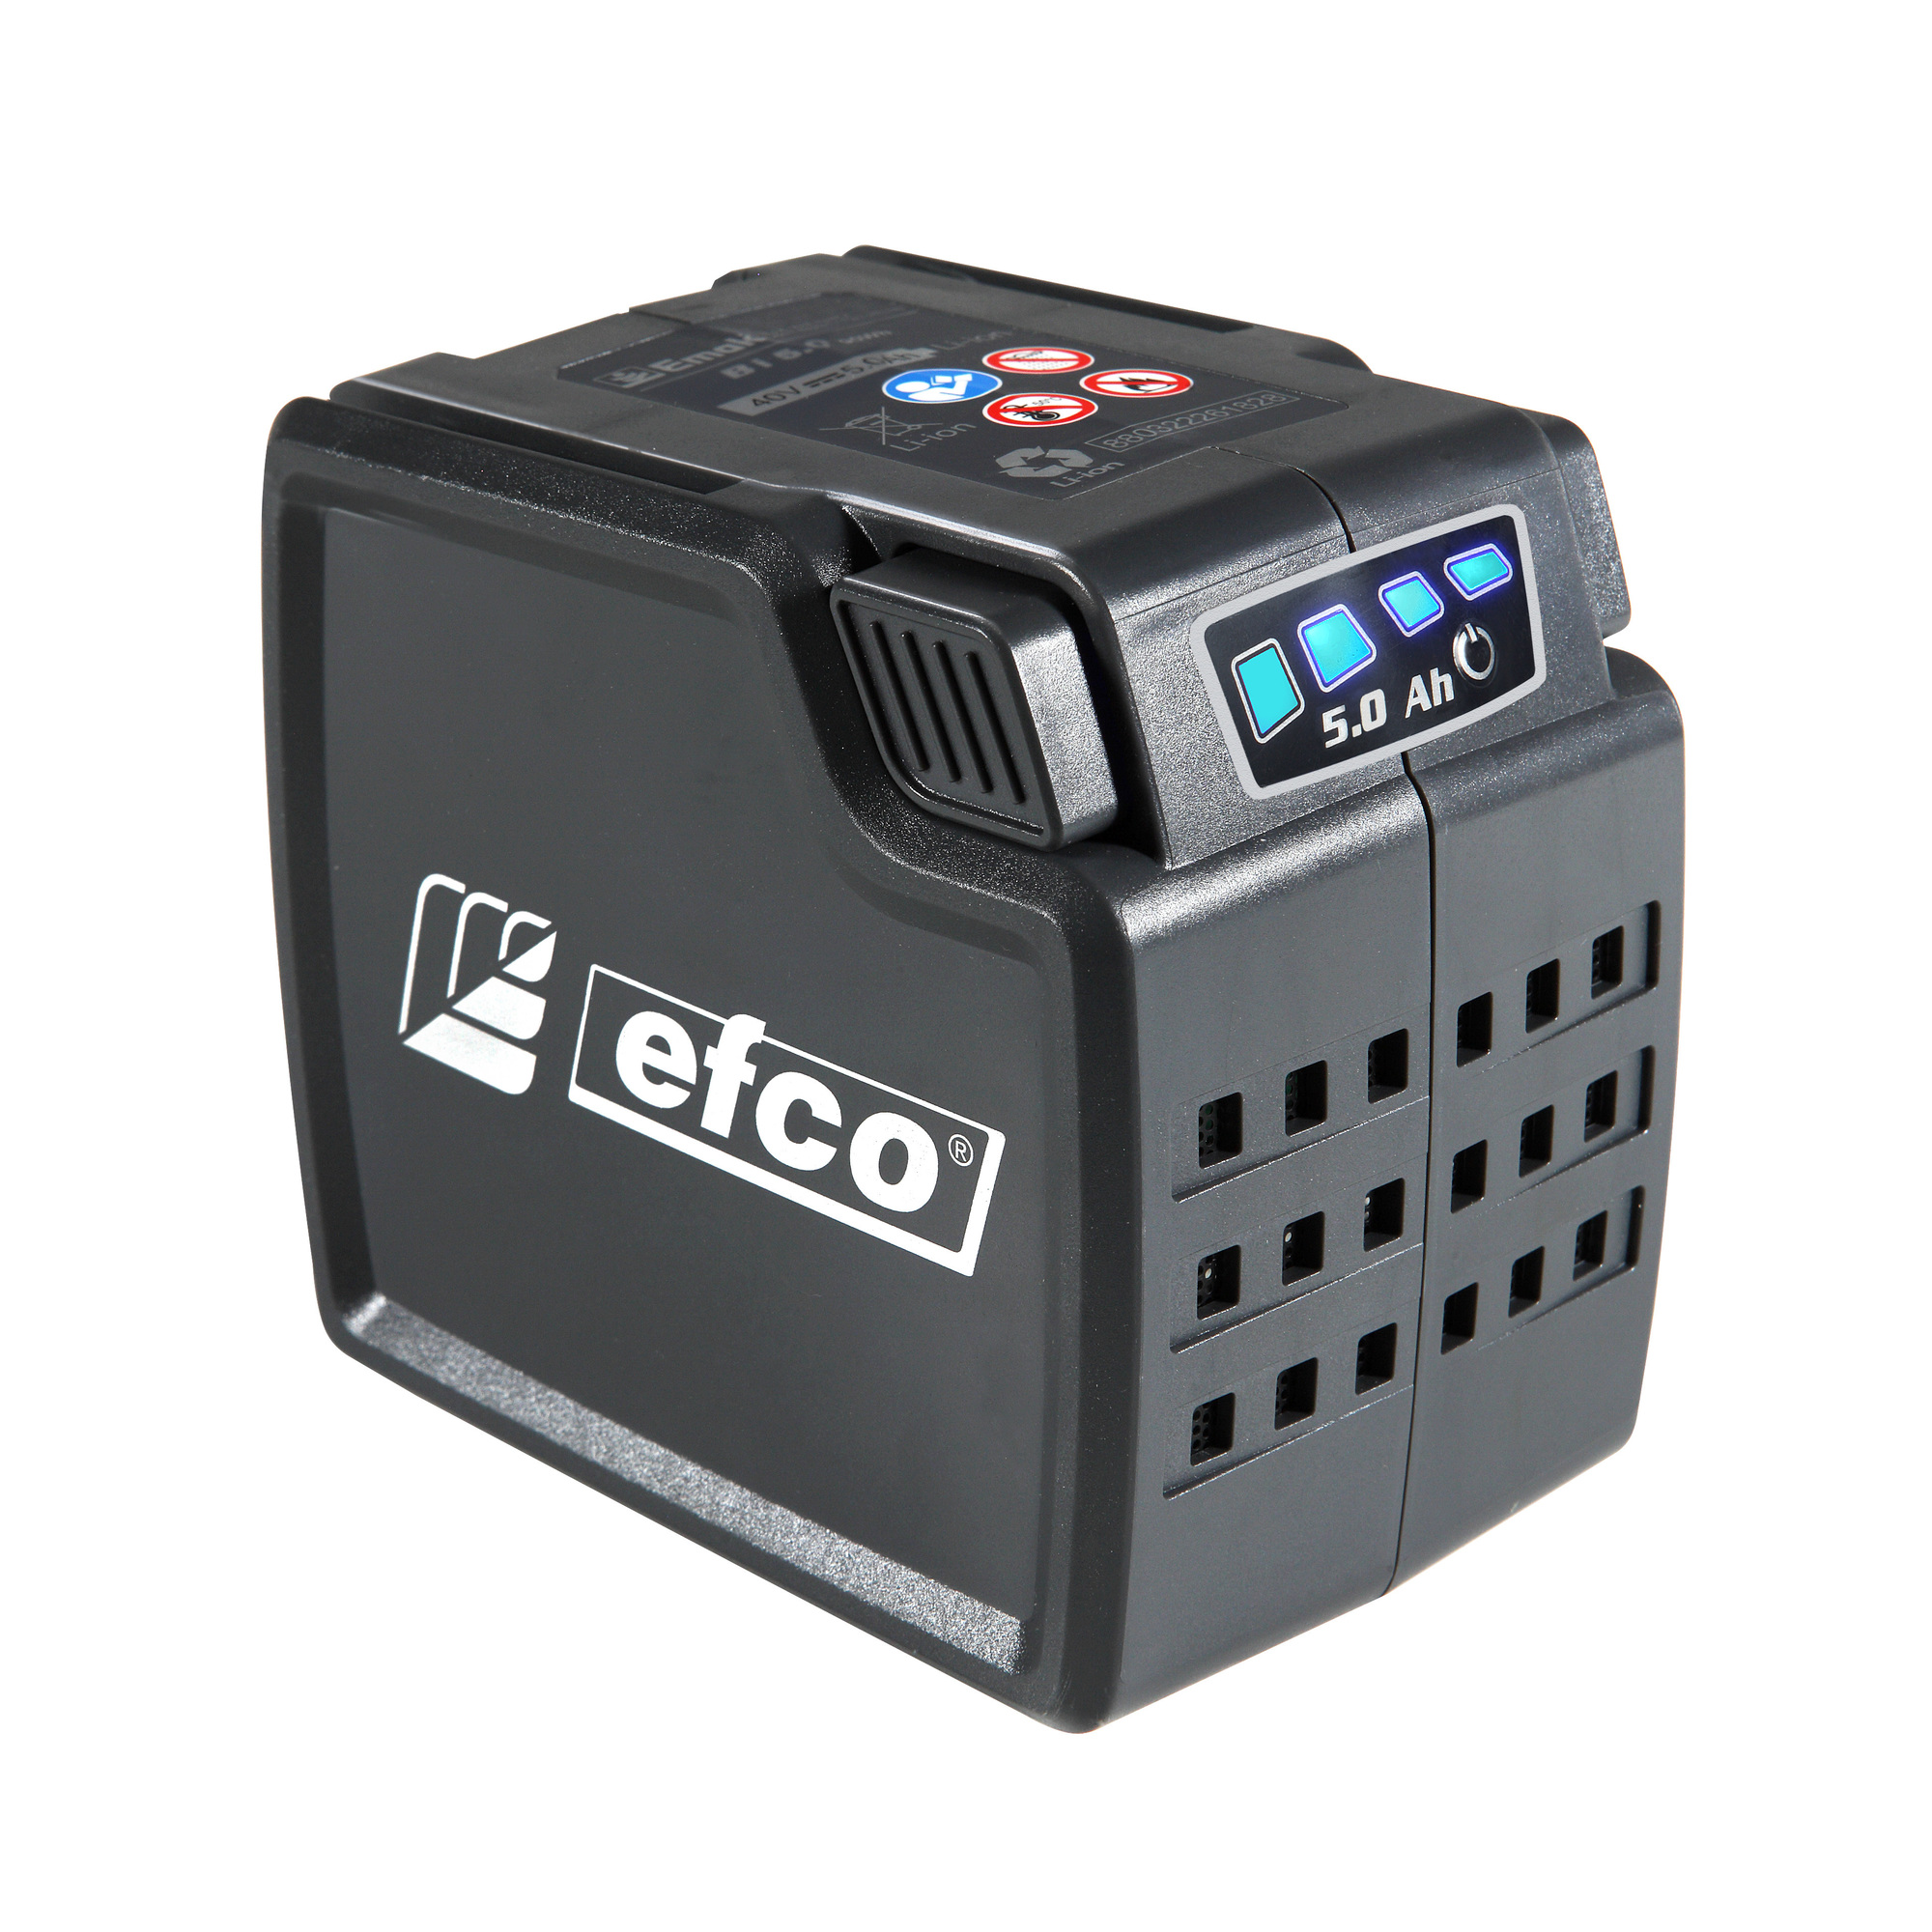 Efco, 40V 5.0 Ah Lithium Ion Battery with LED Indicator, Volts 40, Battery Amp Hours 5, Model BI 5.0 EF